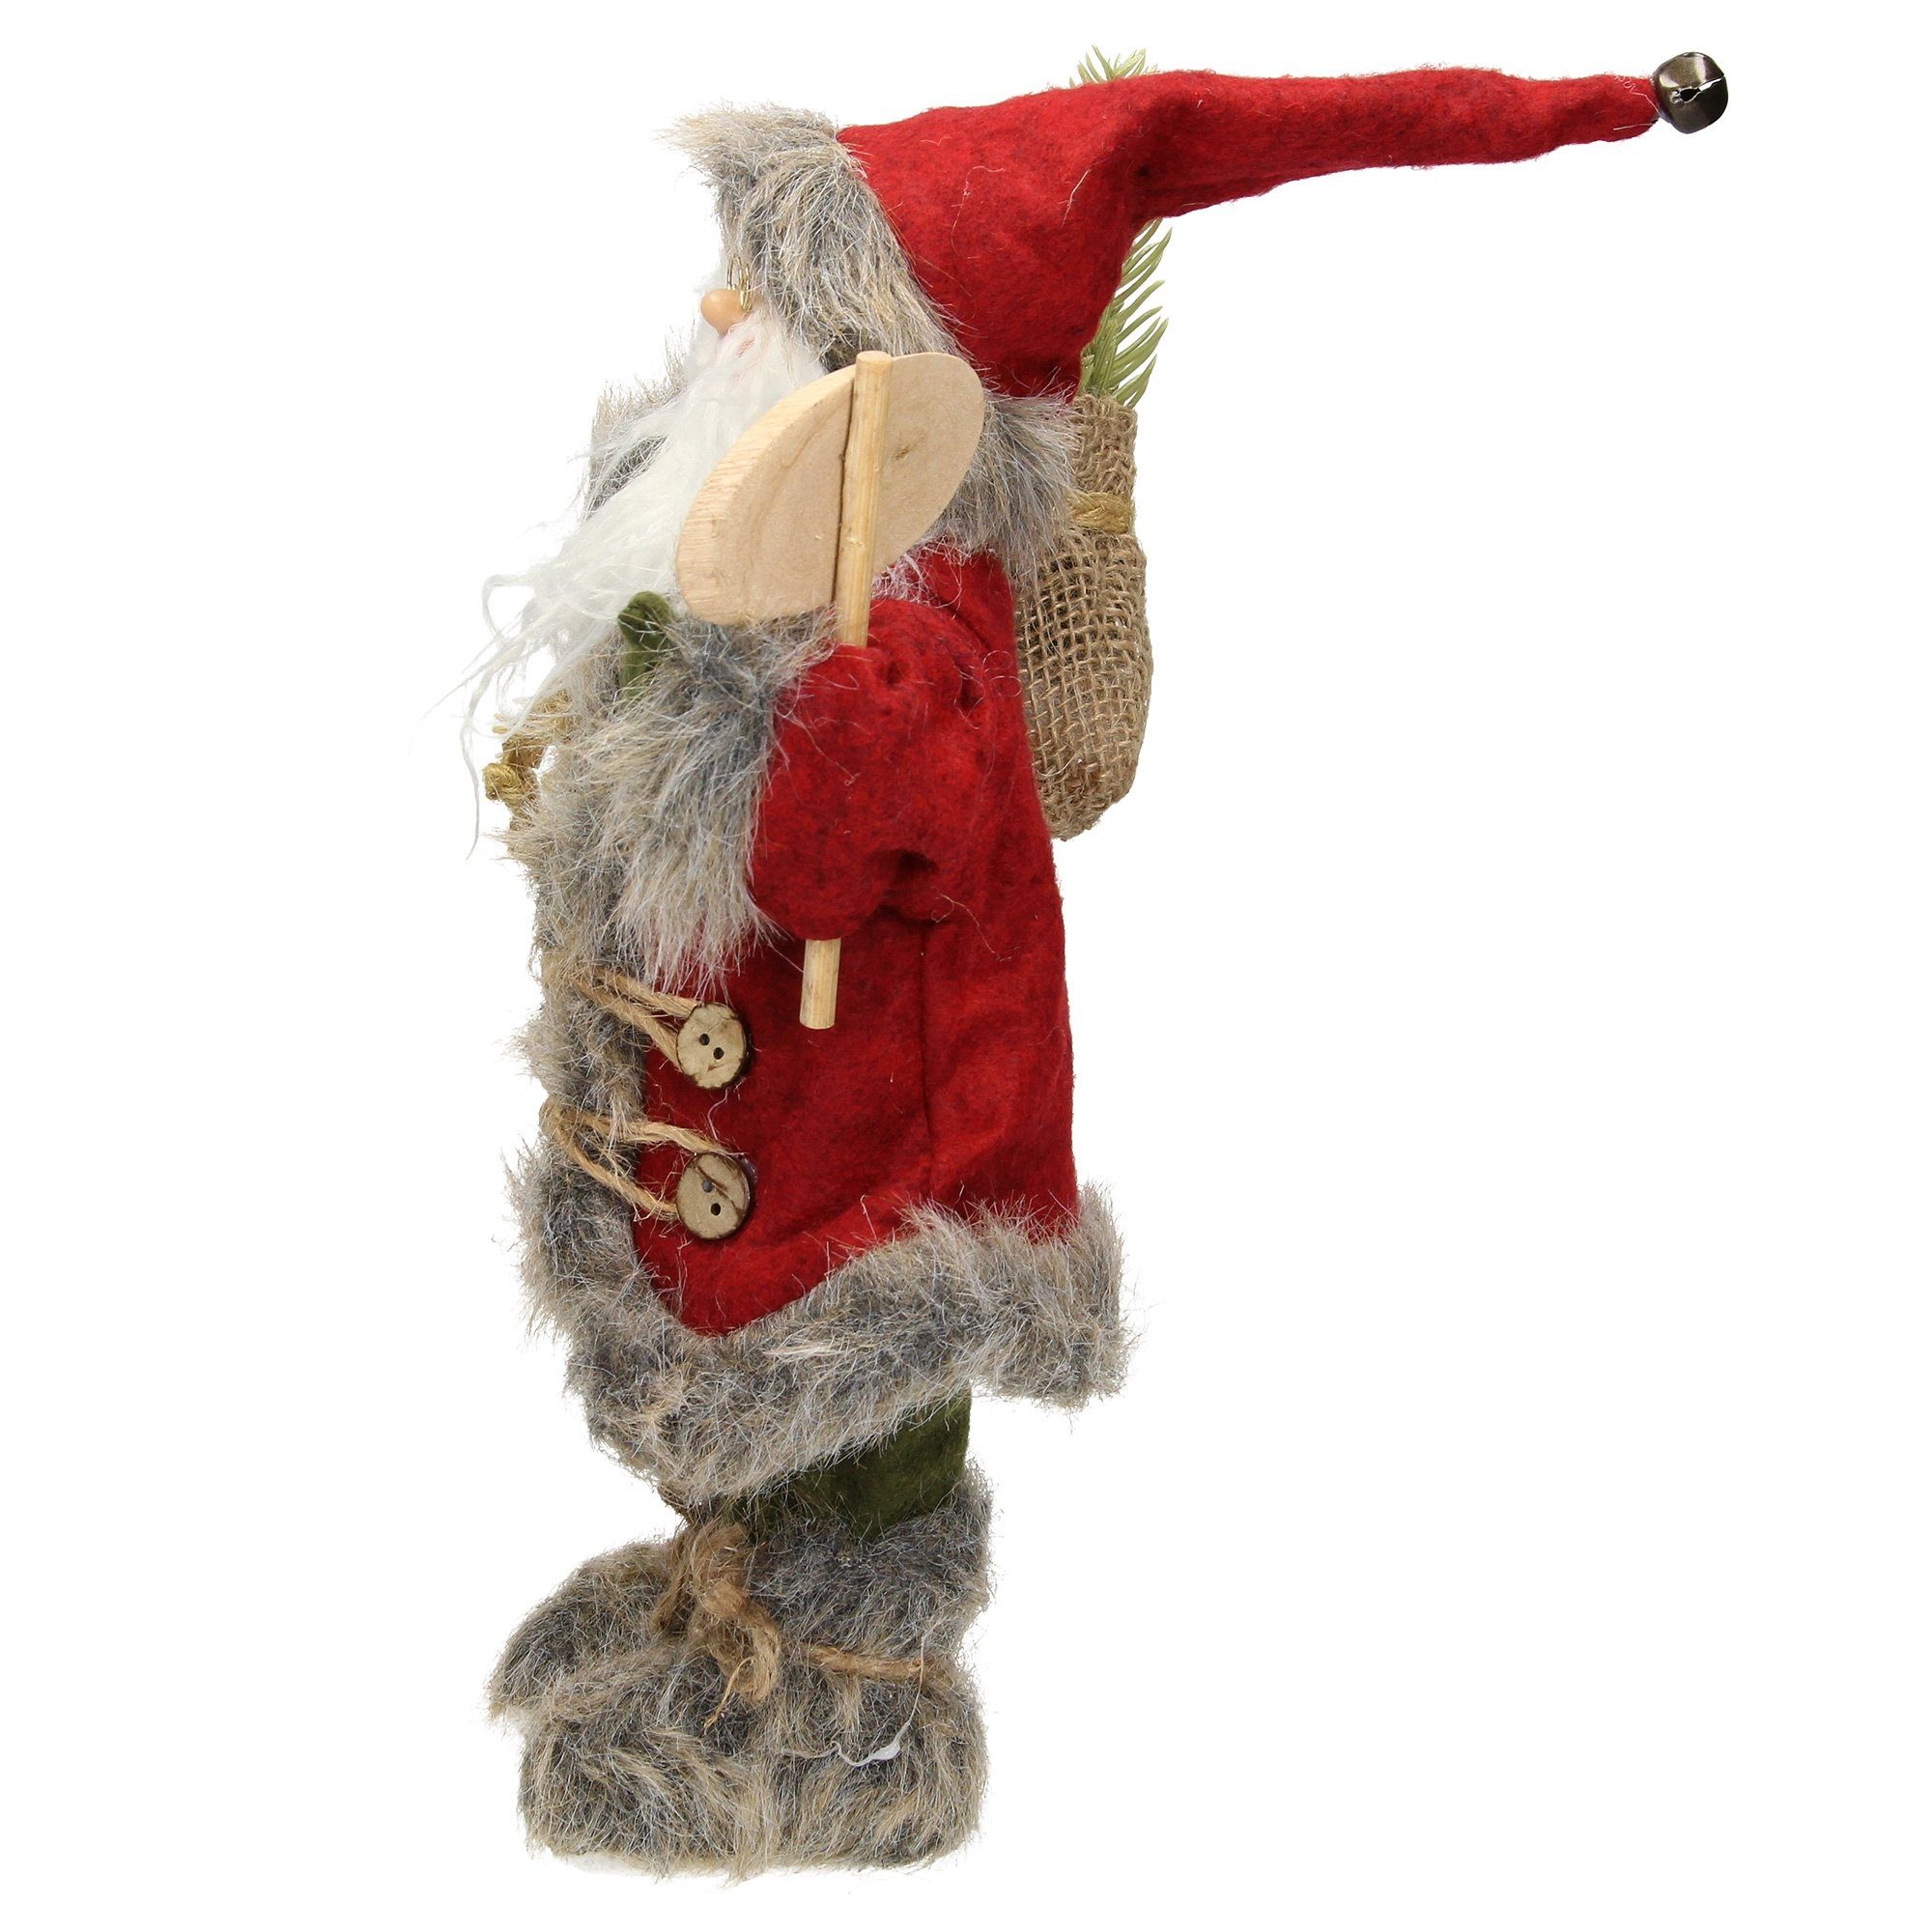 Homevibes ECD mit Geschenkesack cm Mantel 37 Deko-Figur Winterdeko grüner Weihnachtsfigur Figur Weihnachten, Weihnachtsmann Santa-Claus hoch Germany rot/grauer Hose